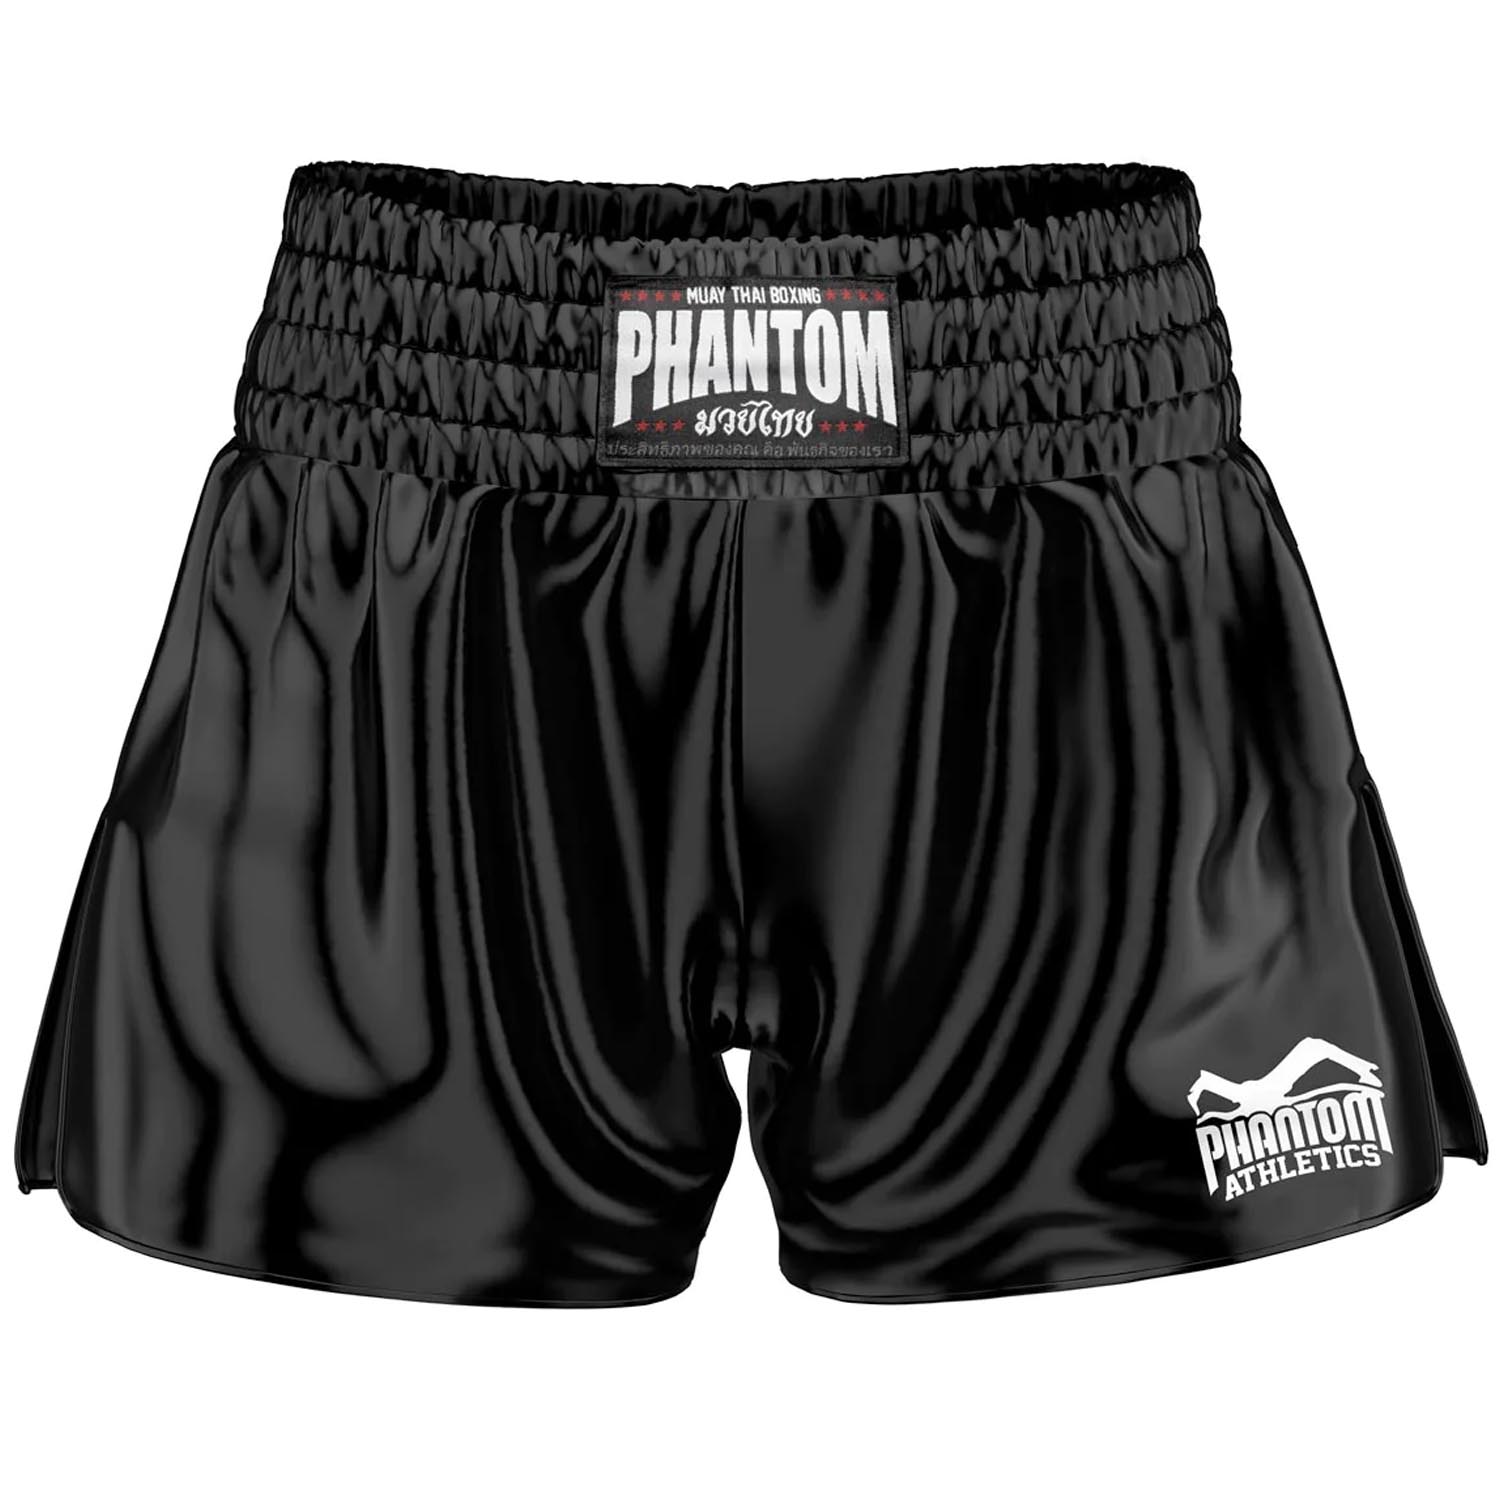 Phantom Athletics Muay Thai Shorts, Team, schwarz